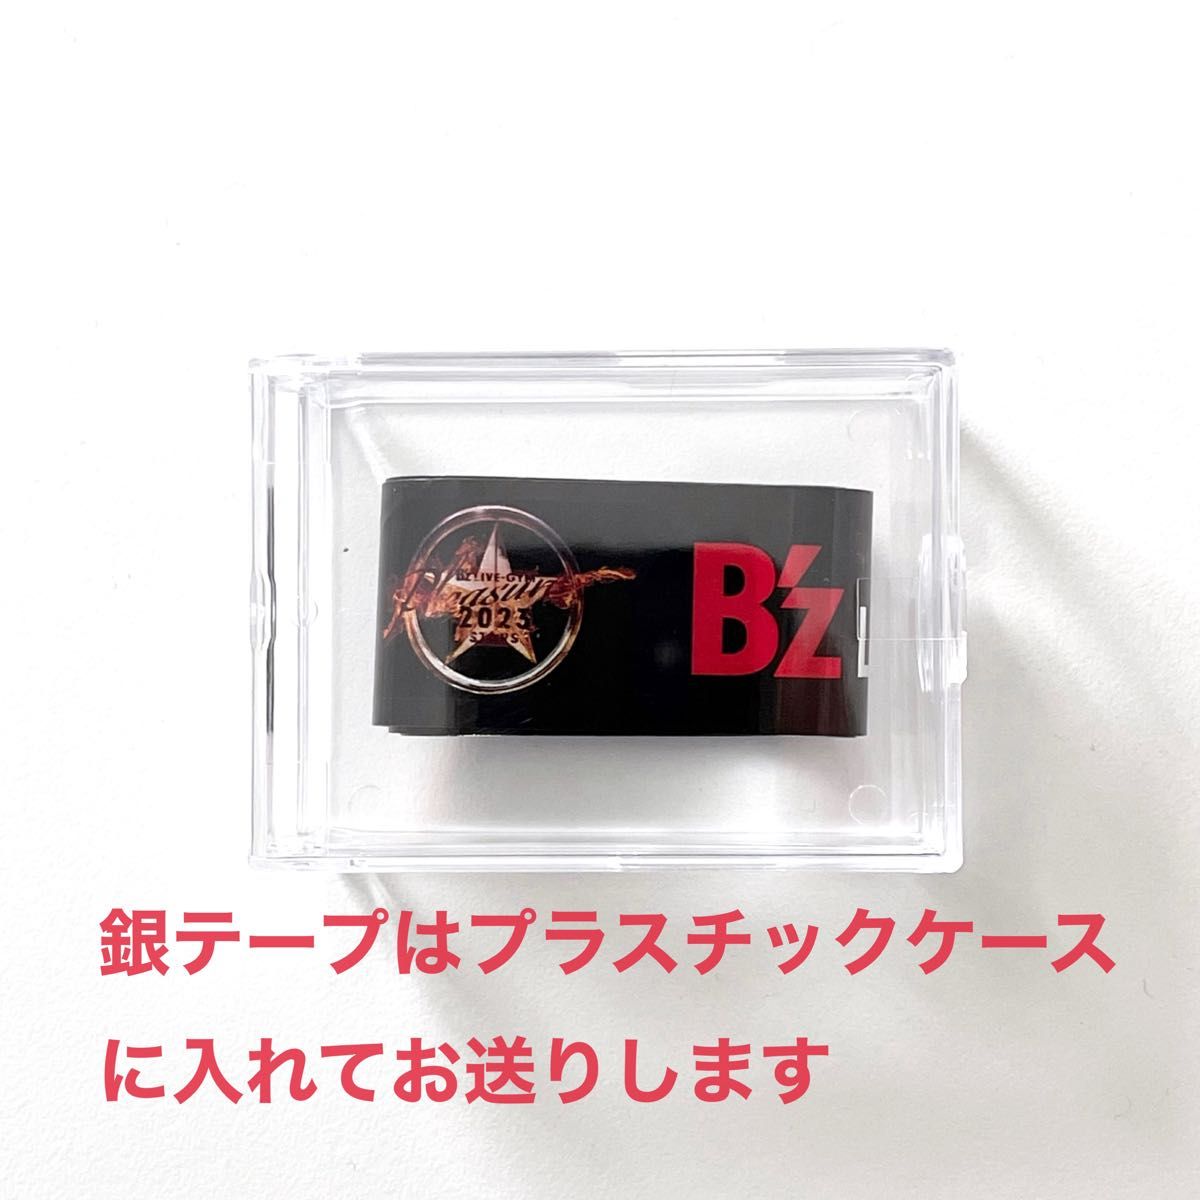 B'z ビーズ Premium席 限定グッズ ★ 銀テープ リストバンド付き ★ プレミアム ライブ グッズ